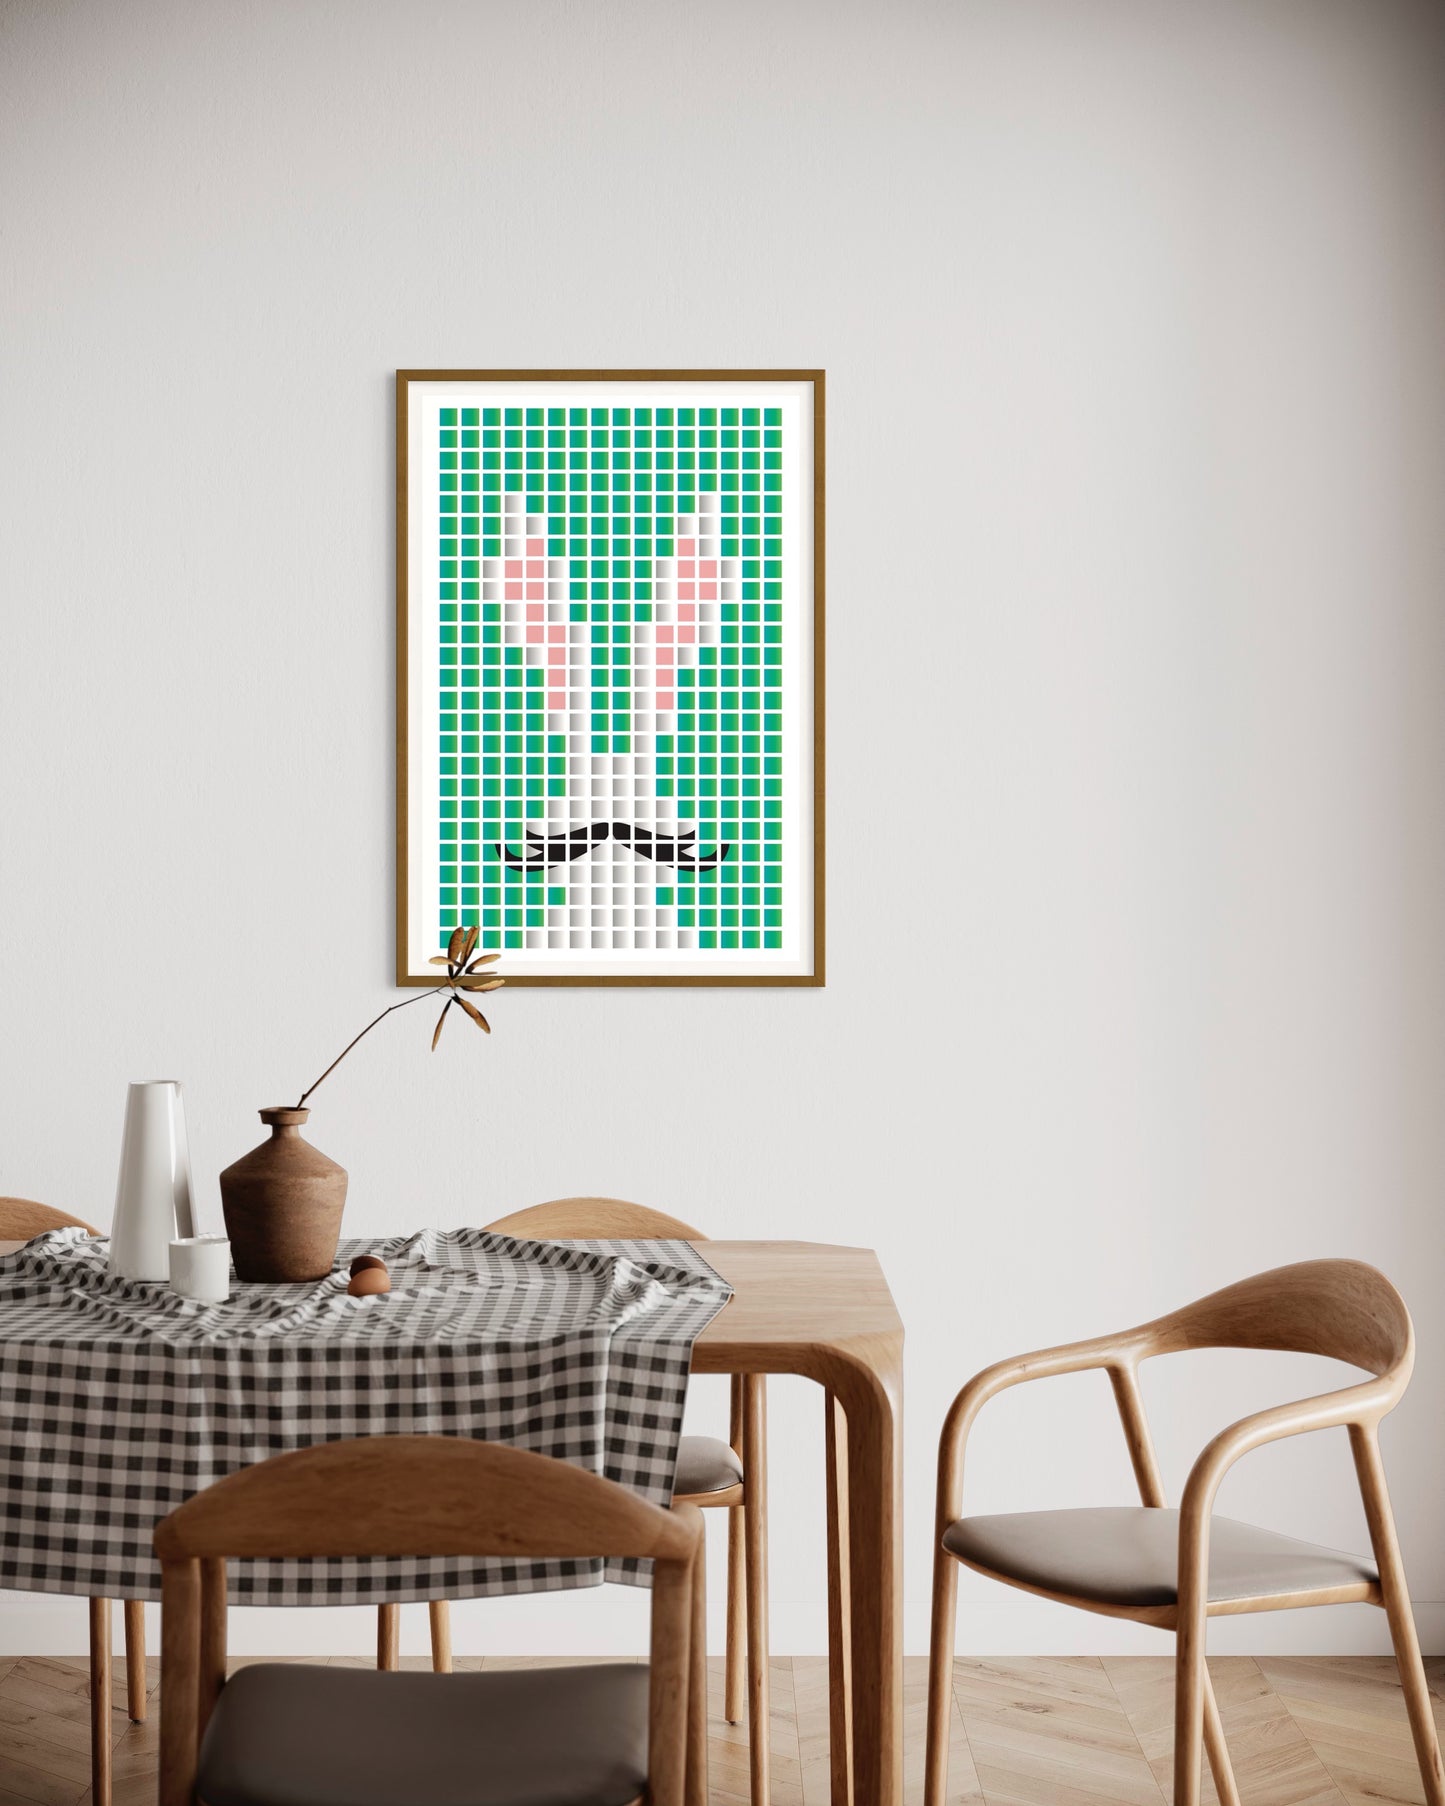 Freya Hearts Premium Poster; Wohnzimmer Poster; Skandinavisches Design; Minimalistisches Poster; Moderne Wall Art; Esszimmer Poster; Küchen Poster; Wandkunst; Kaffee Poster; Hasen poster; Oster Poster; Bunny poster; Pixel Poster;